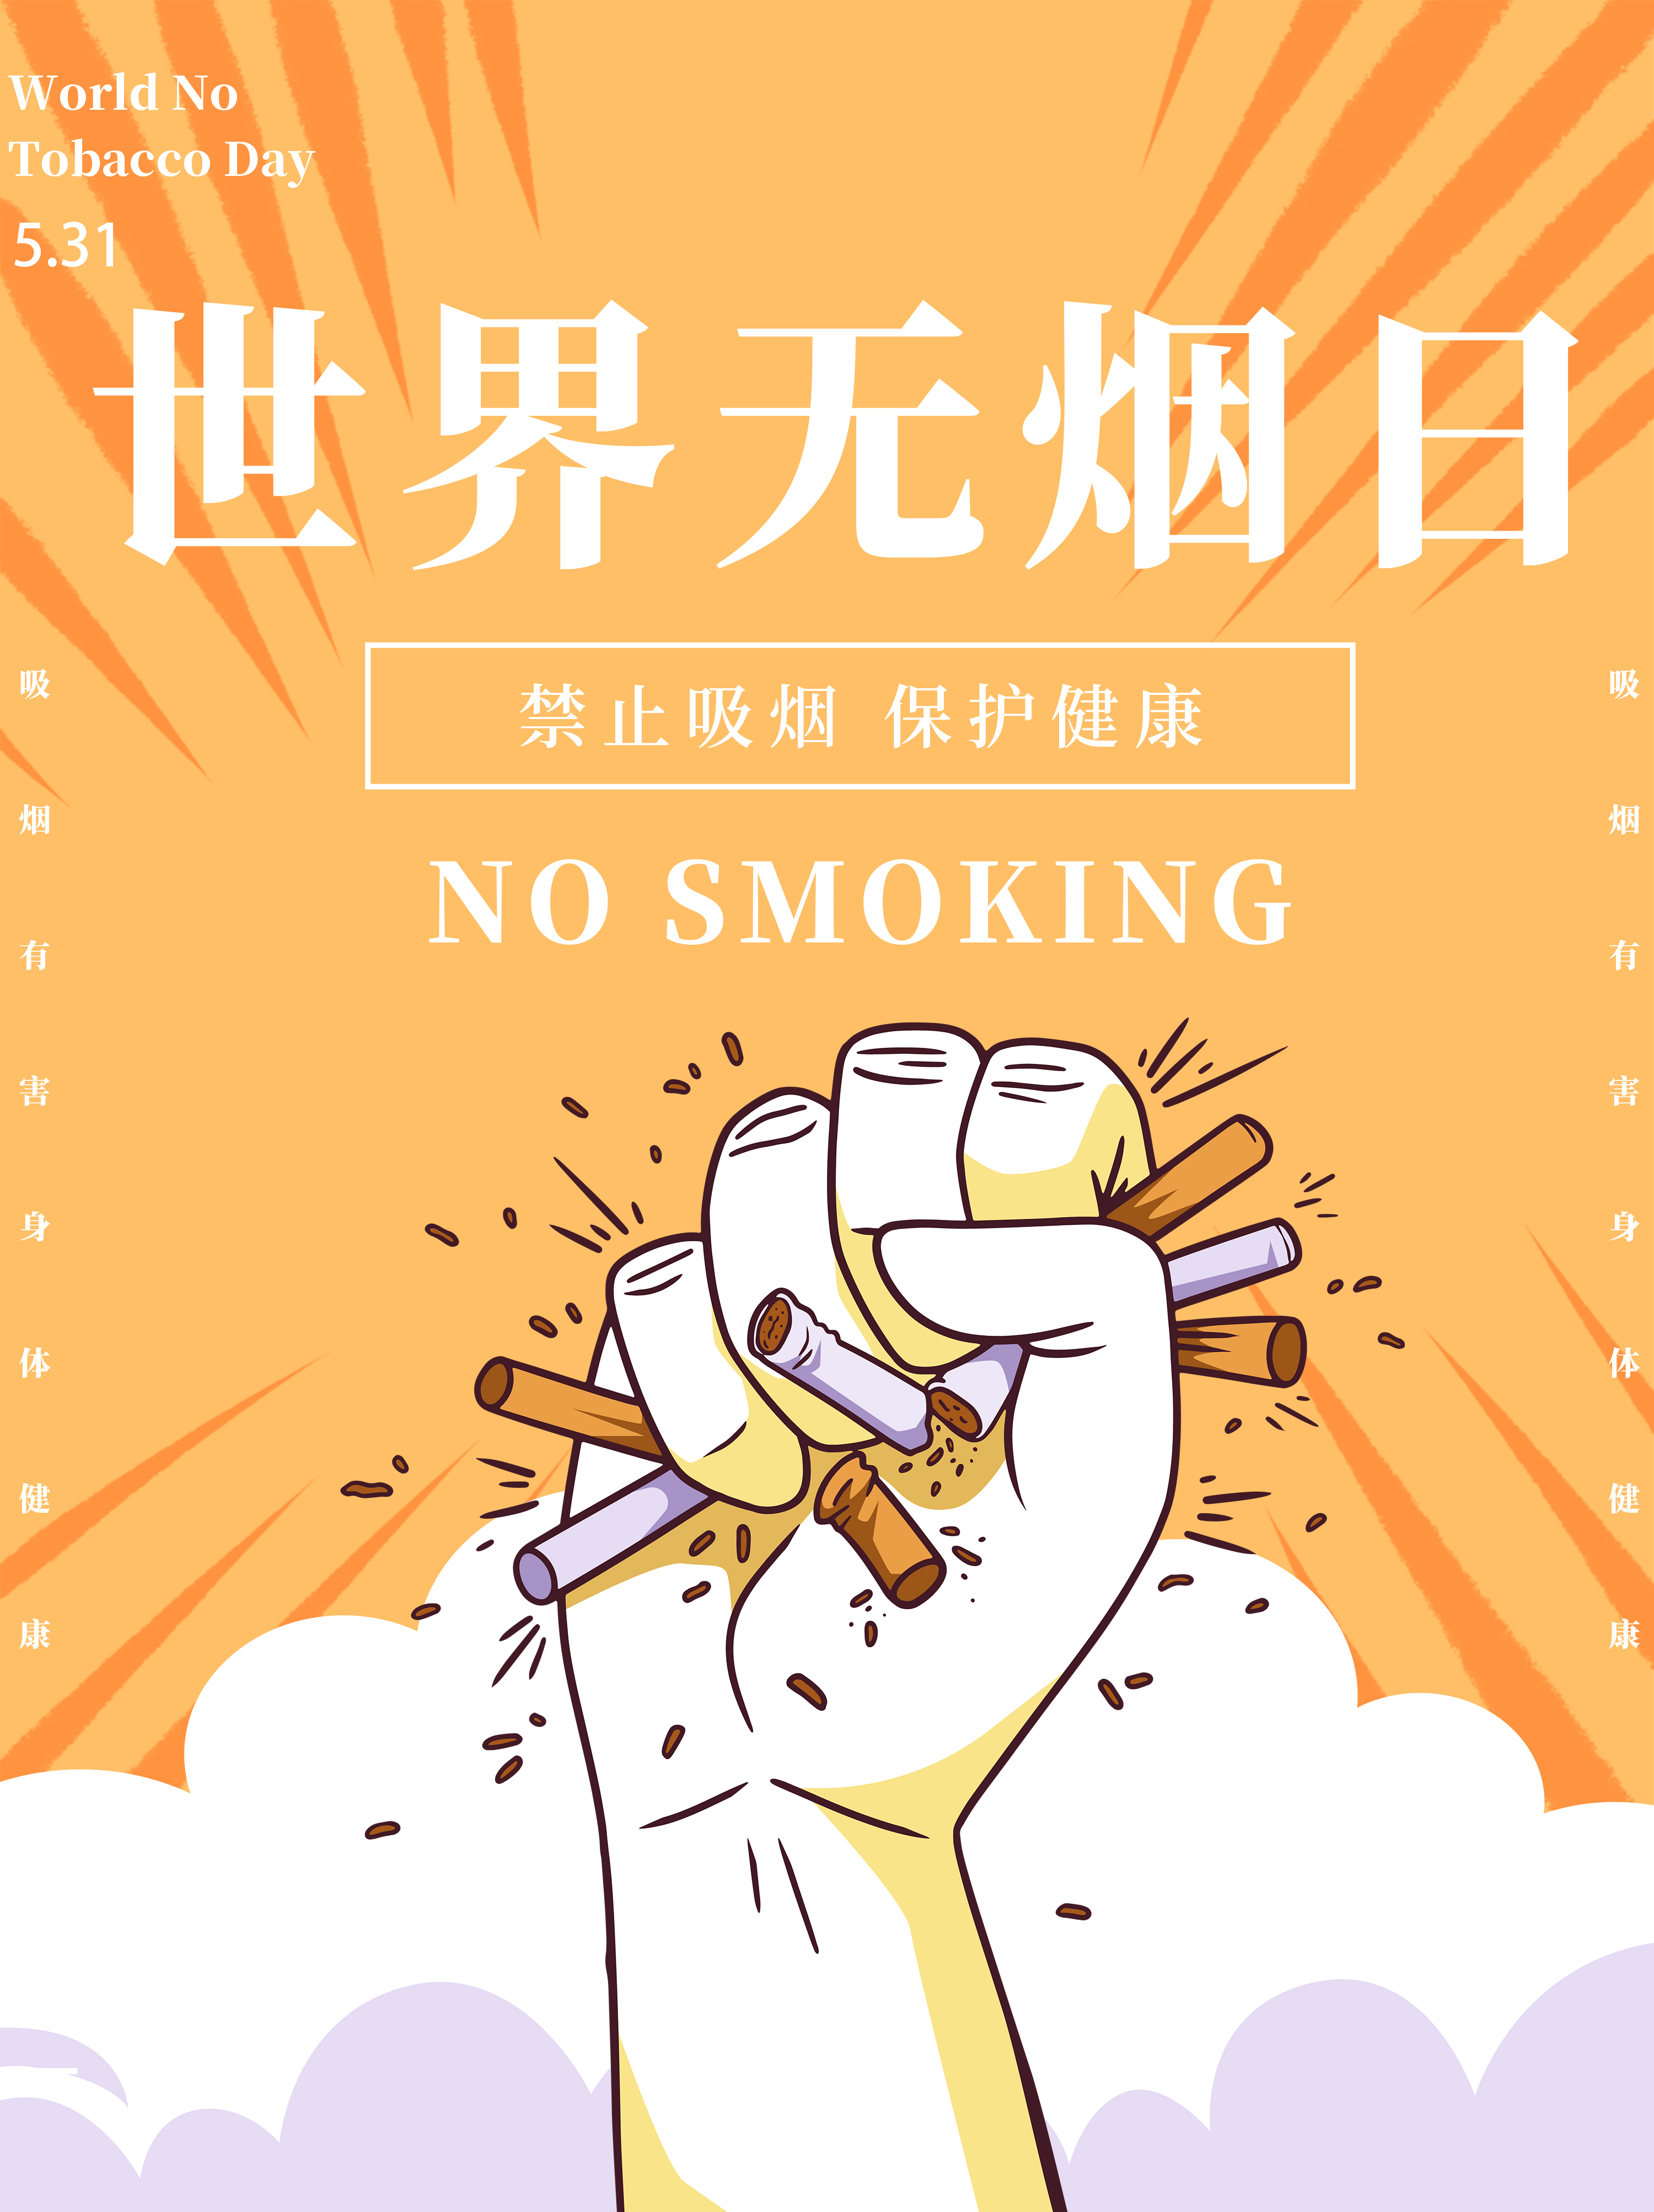 世界无烟日的宣传语以及世界无烟日主题活动策划适用的公益海报